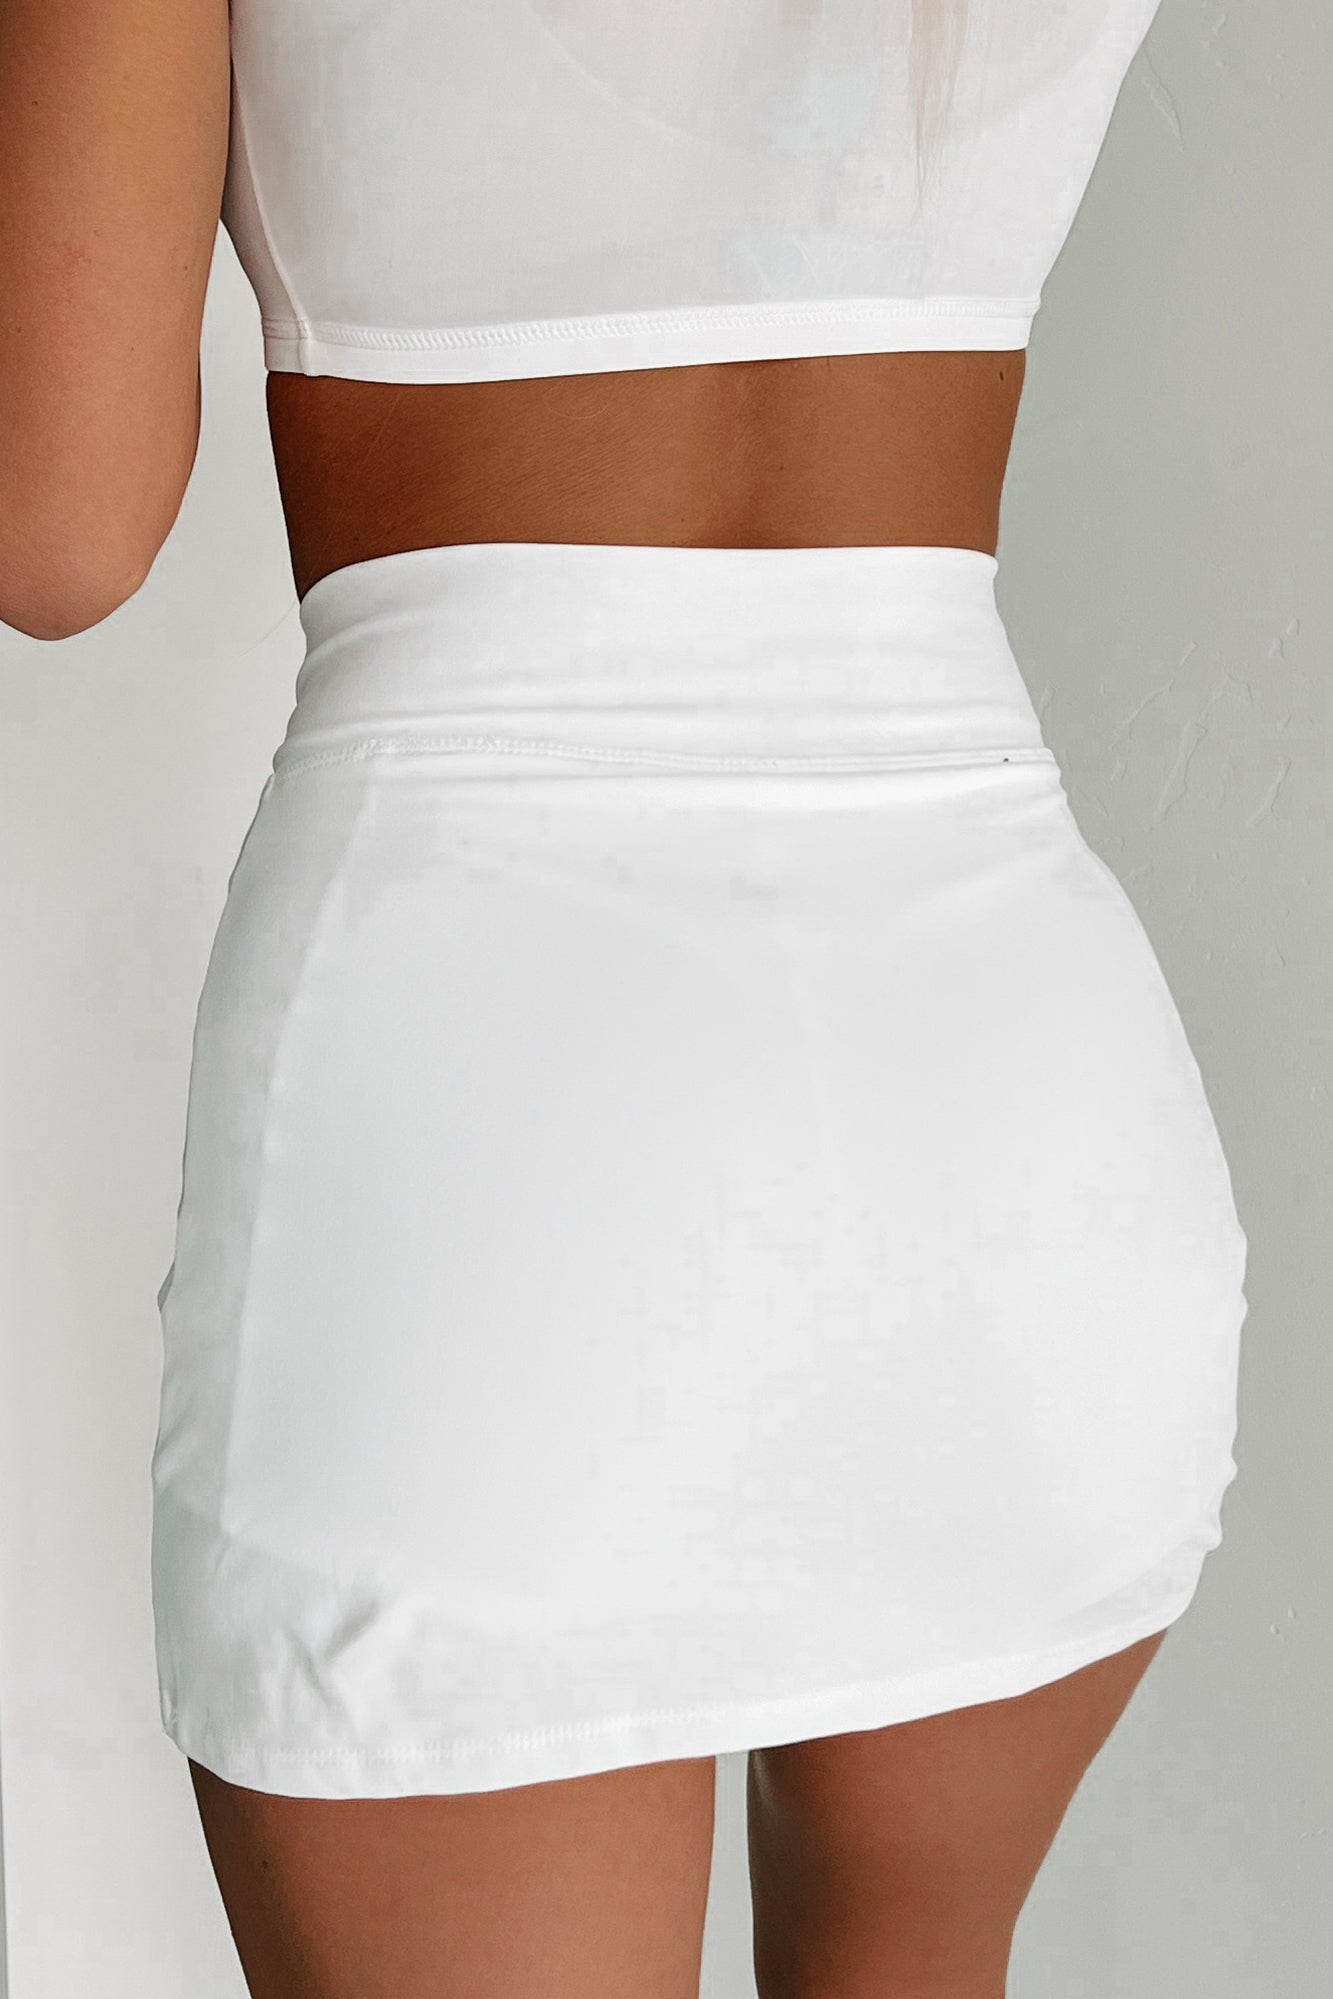 Spend The Day Active Mini Skirt (White) - NanaMacs